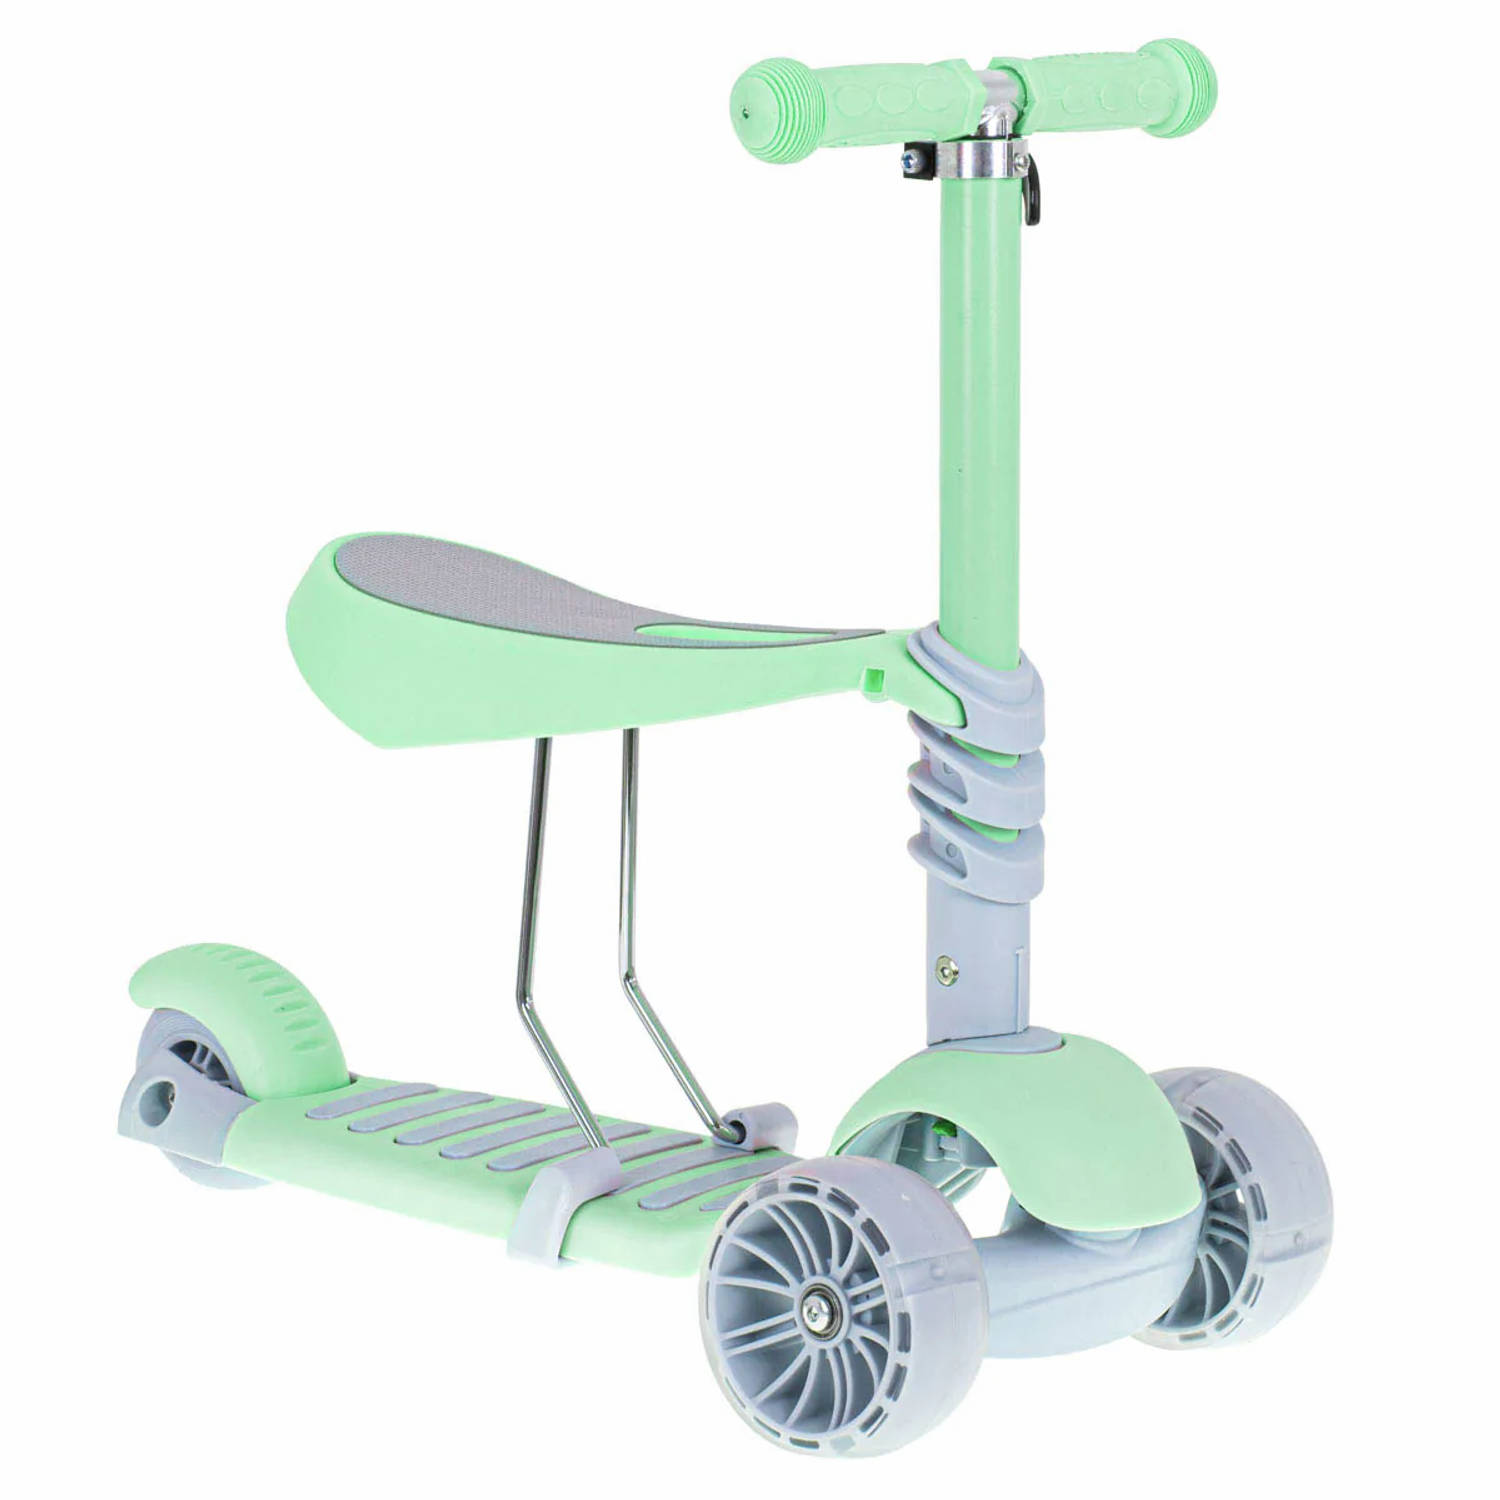 Luxe balans 3 in 1 step met zitje driewieler skateboard met lichtgevende wielen vanaf 3+ jaar